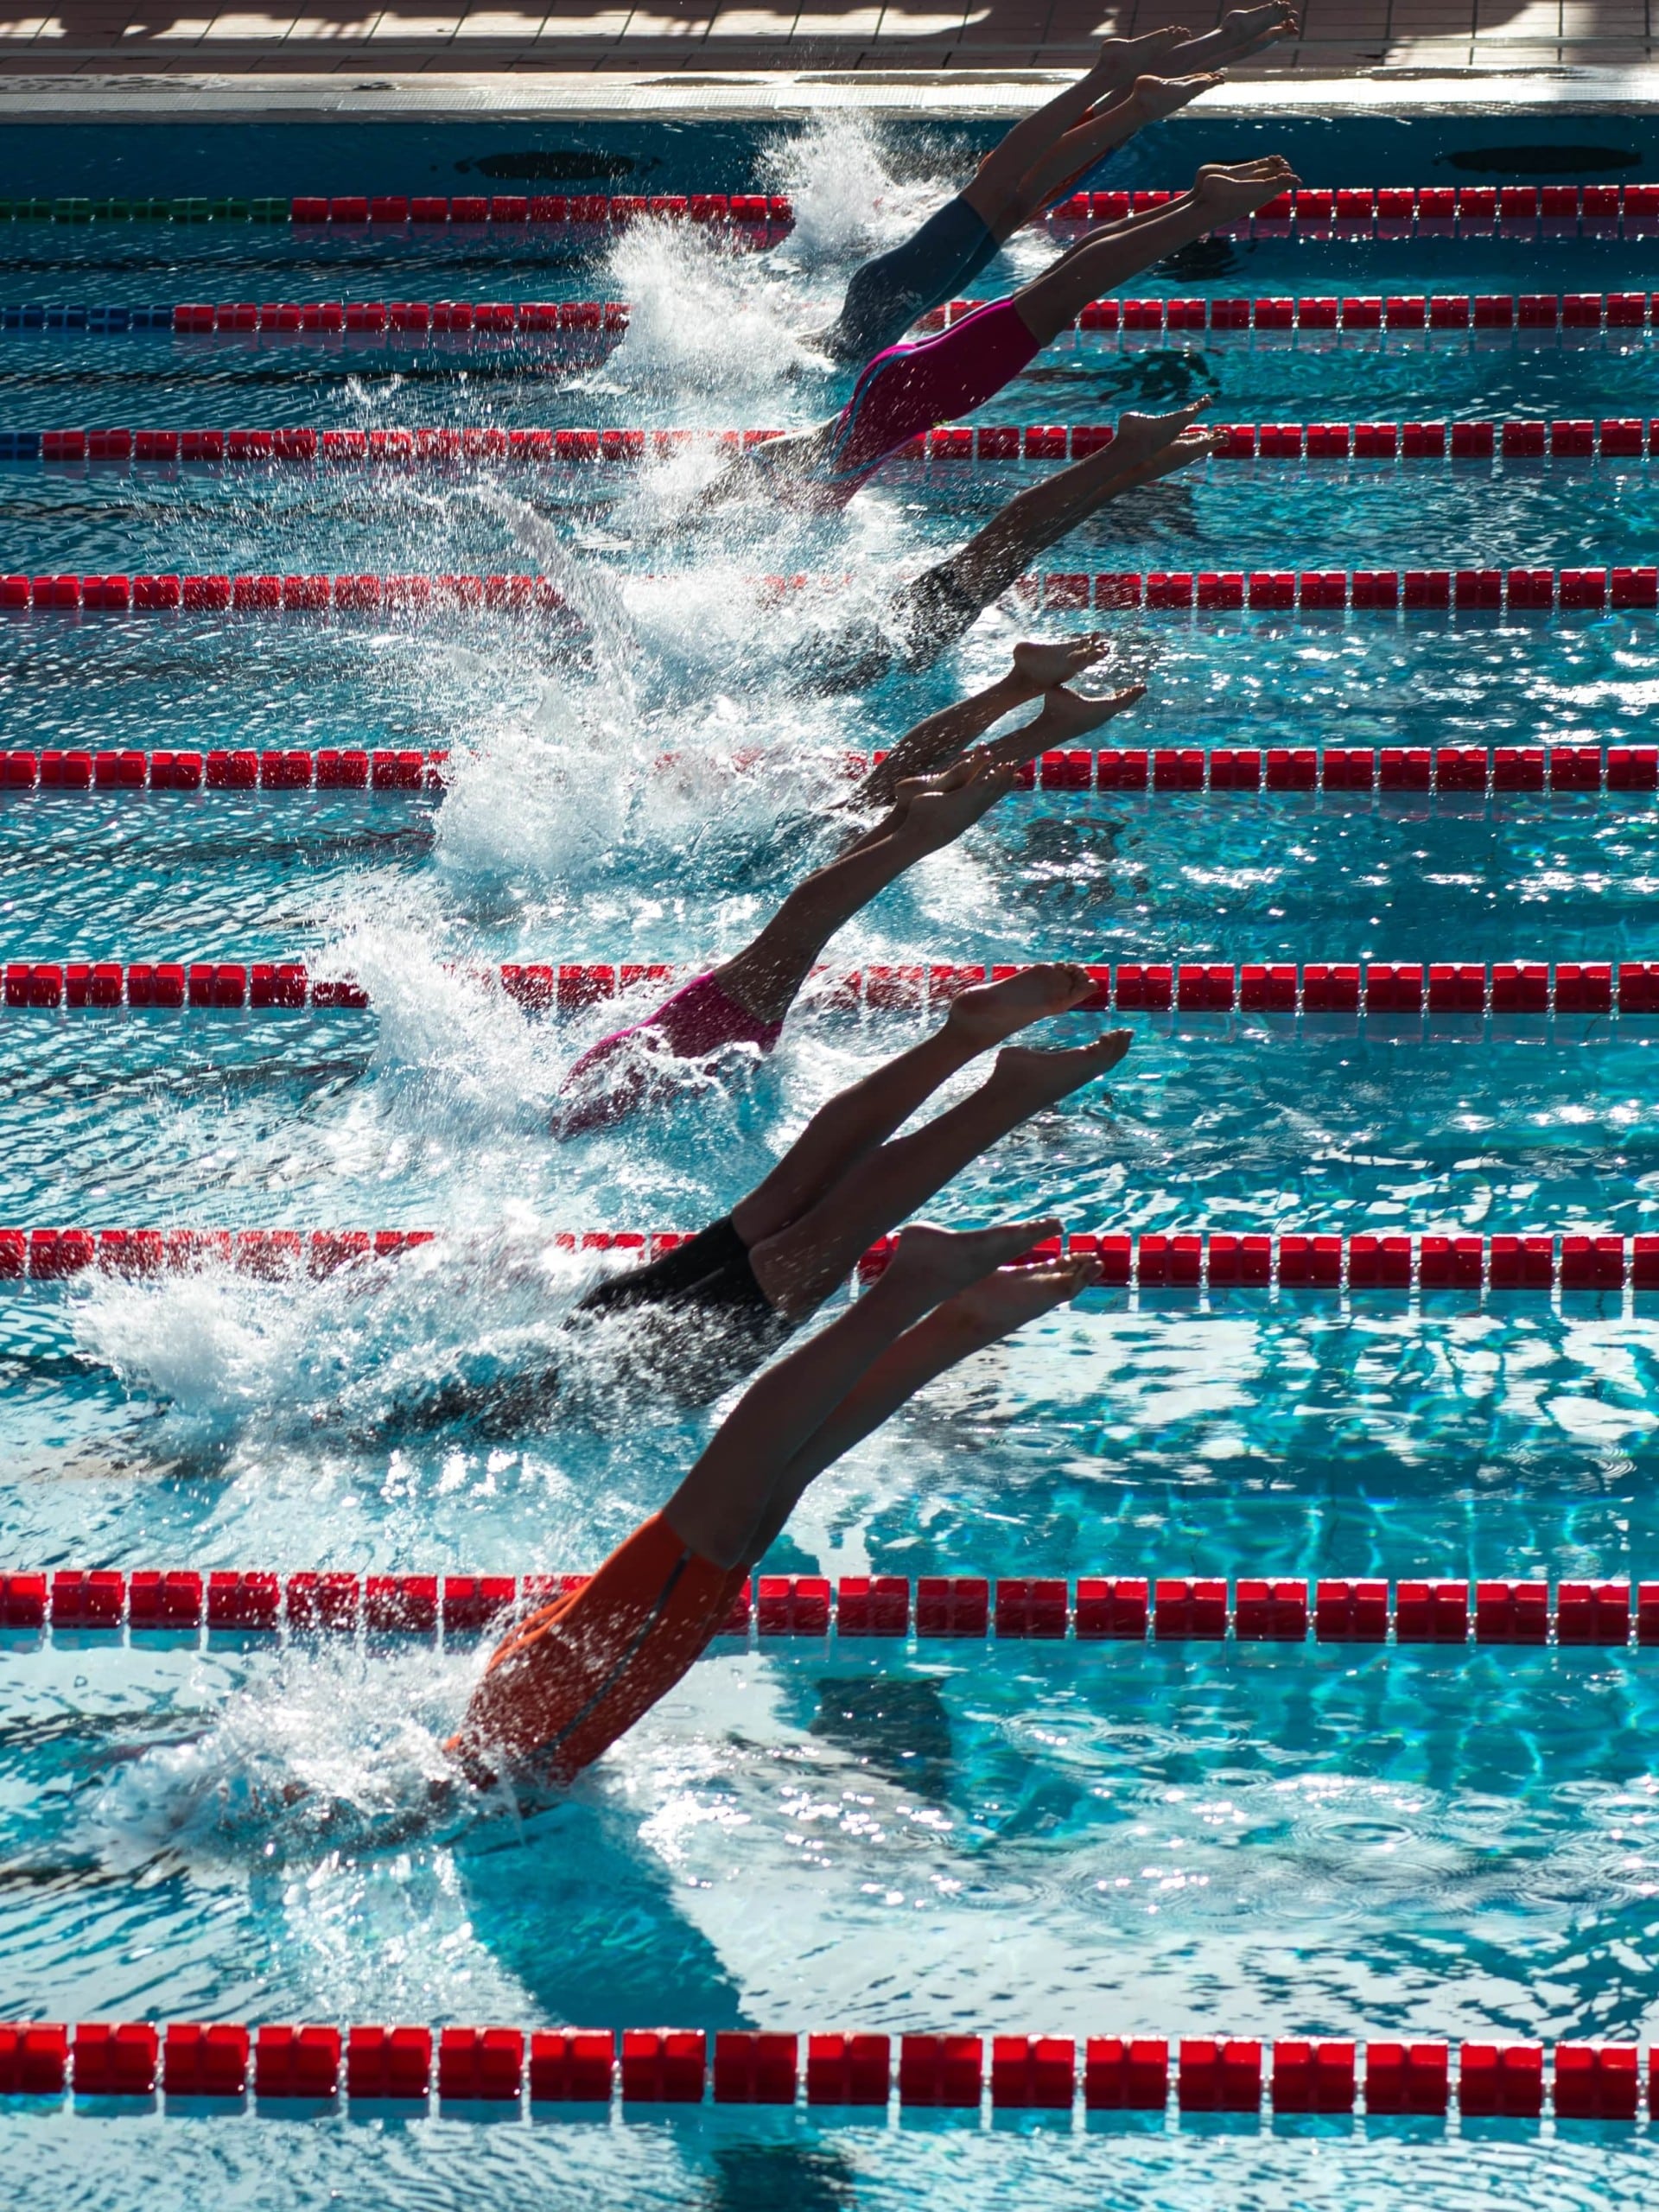 Sieben Personen springen gleichzeitig in nebeneinander liegende Schwimmbahnen eines Pools. Es sind nur noch die Beine zu sehen. Foto: Serena Repice Lentini via Unsplash